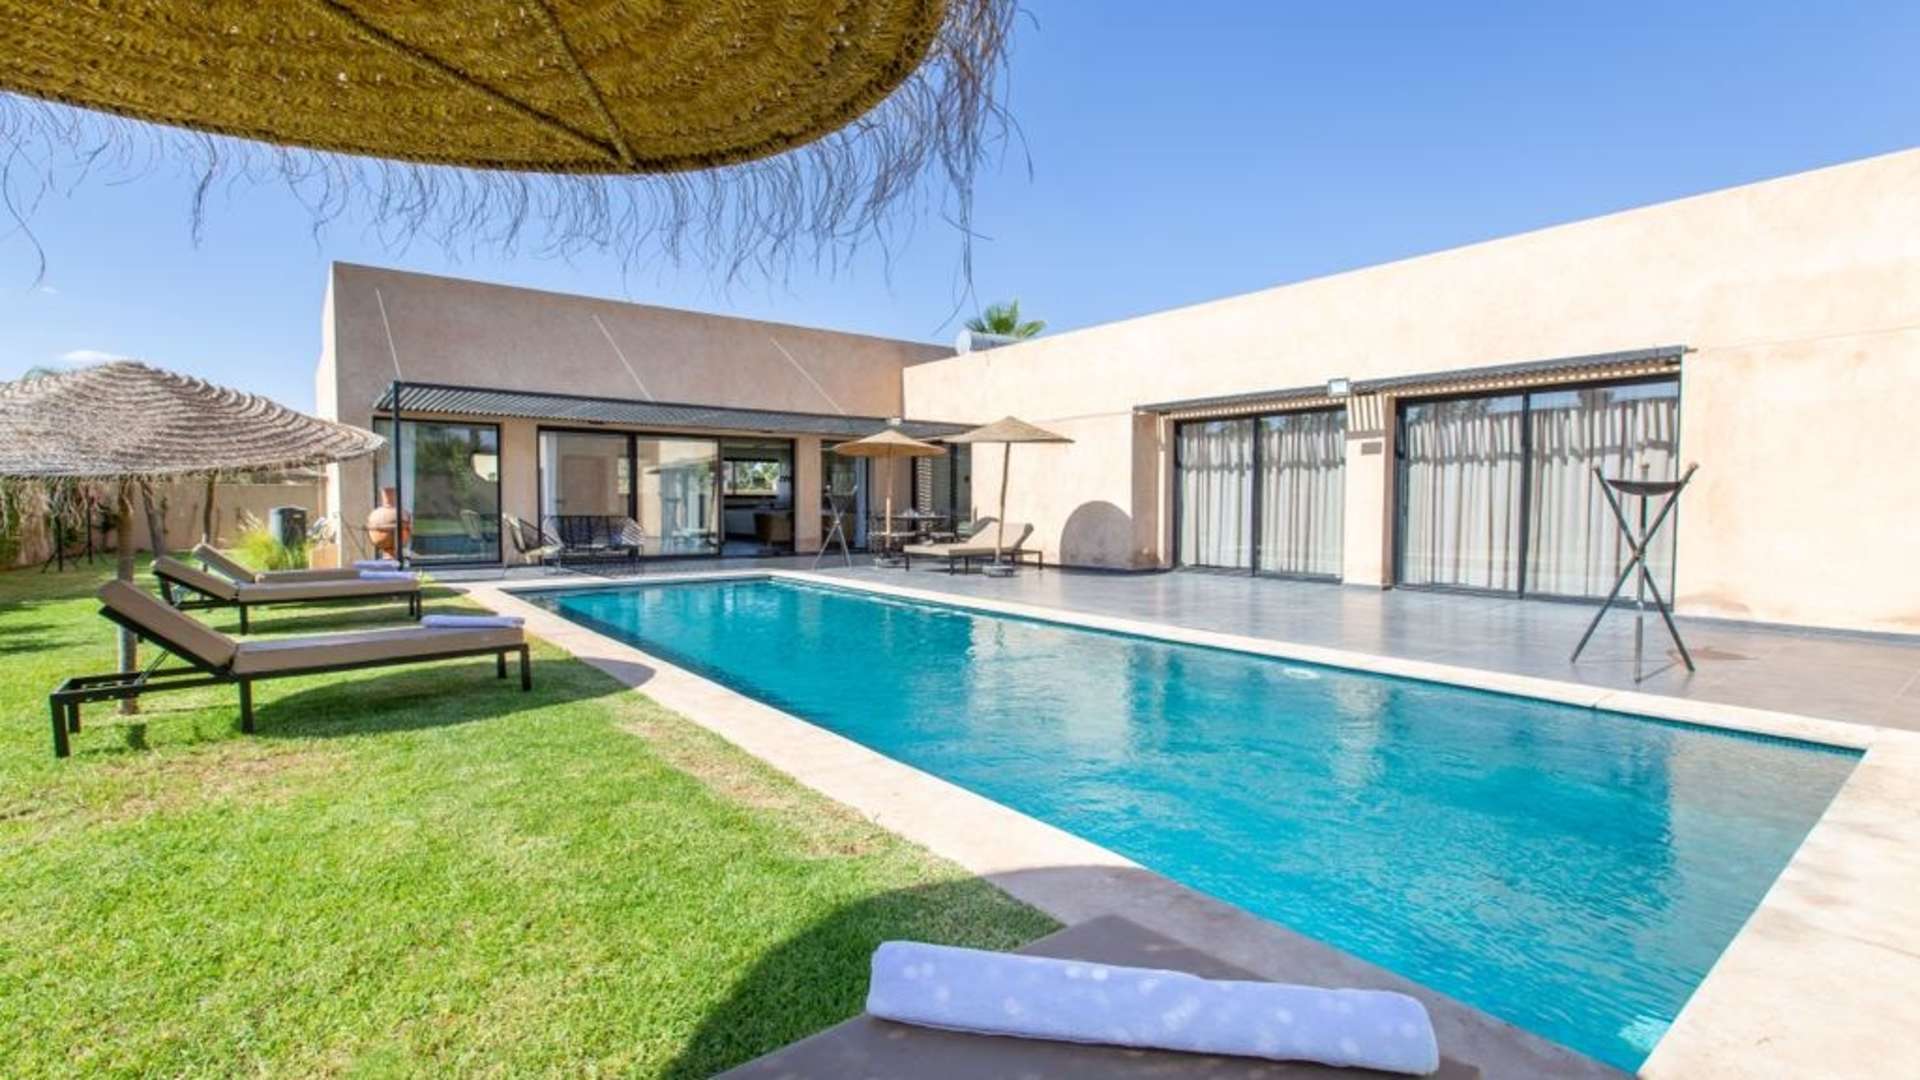 Location de vacances,Villa,Villa moderne de plain-pied  à louer pour vos vacances à Marrakech,Marrakech,Route de l'Ourika